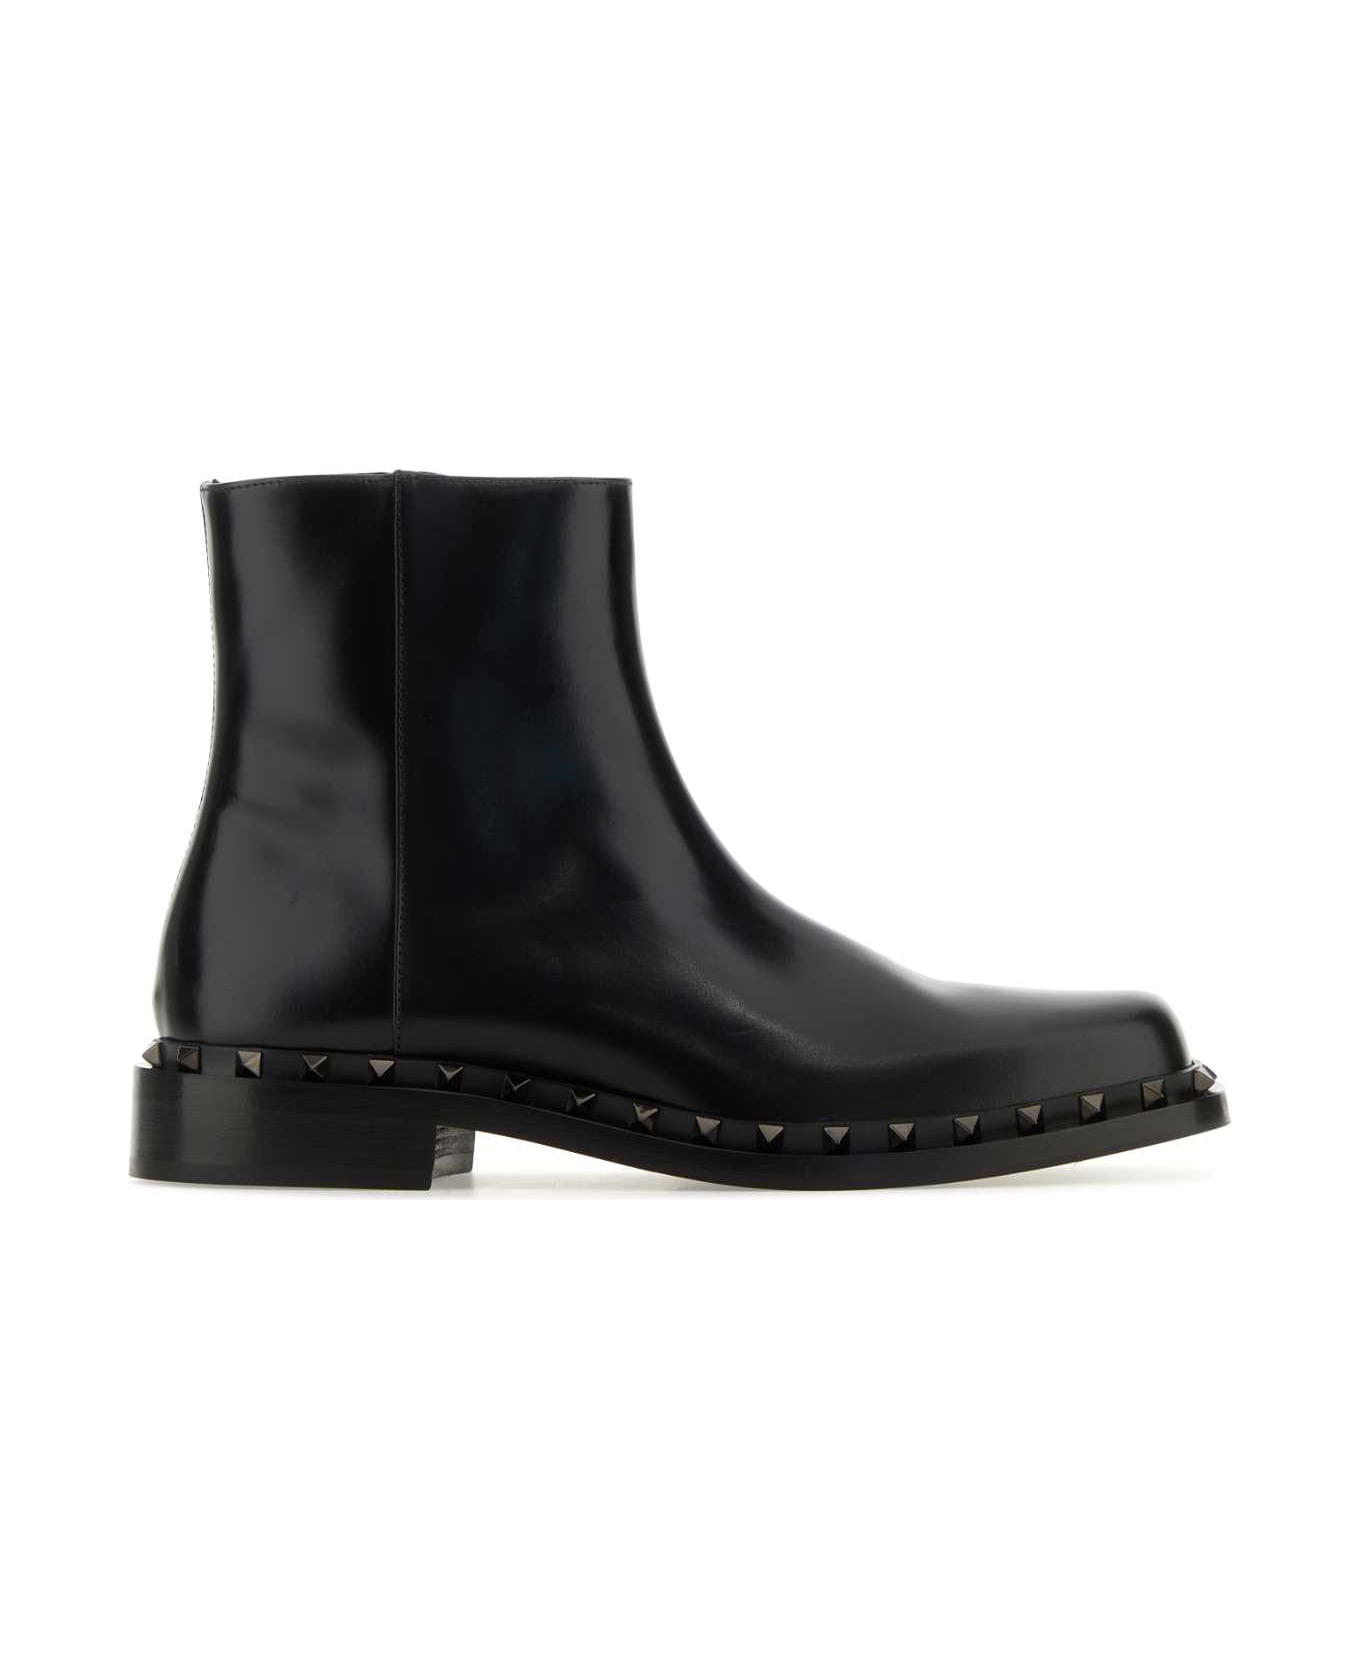 Valentino Garavani Black Leather Ankle Boots - NERO ブーツ